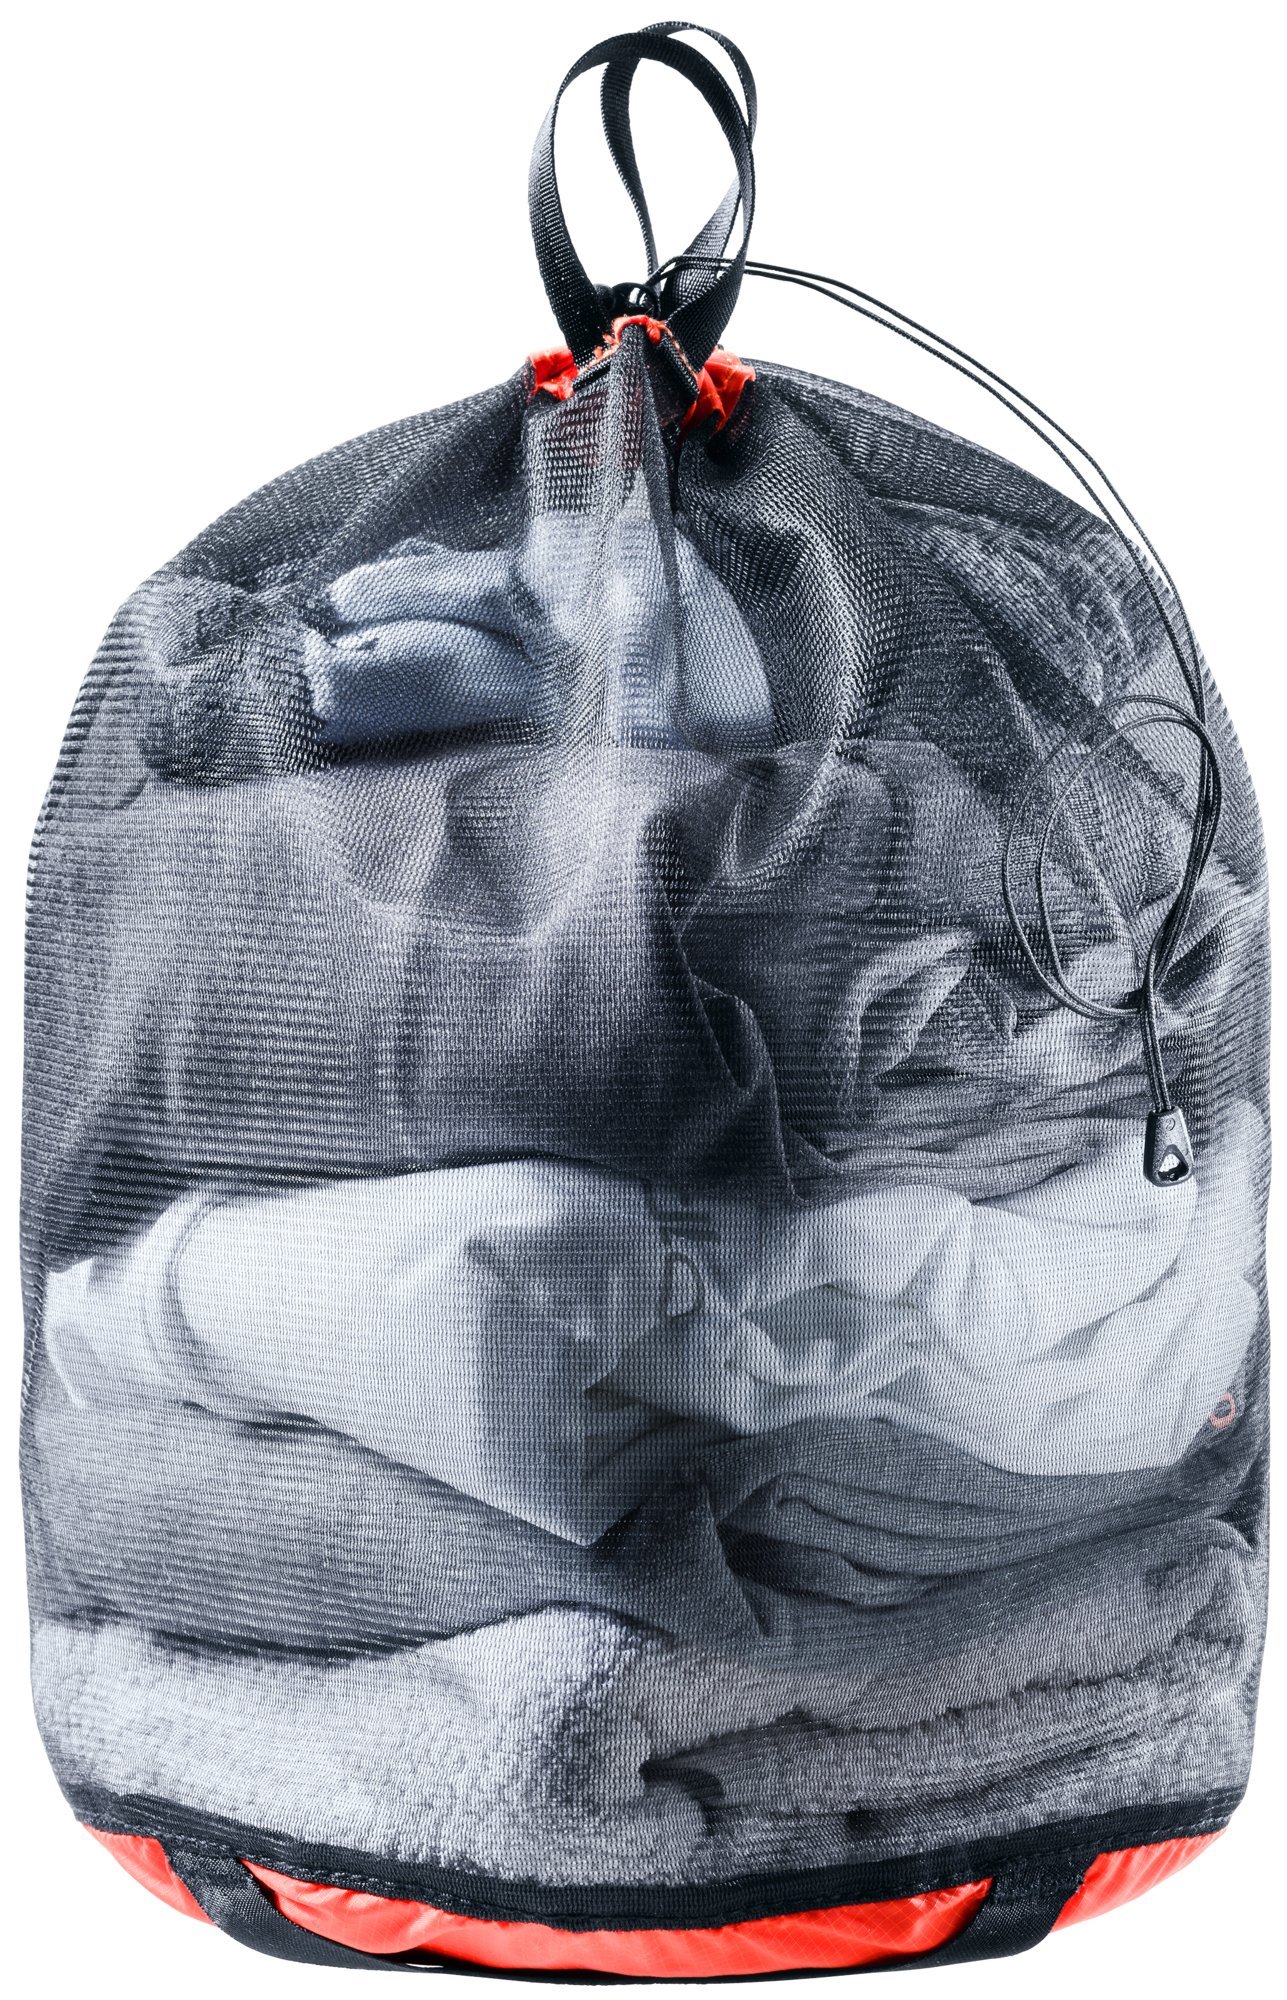 Чехлы для одежды и обуви Упаковочный мешок Deuter Mesh Sack 5 (2021) 3940721-9701-MeshSack5-w20-d0.jpg